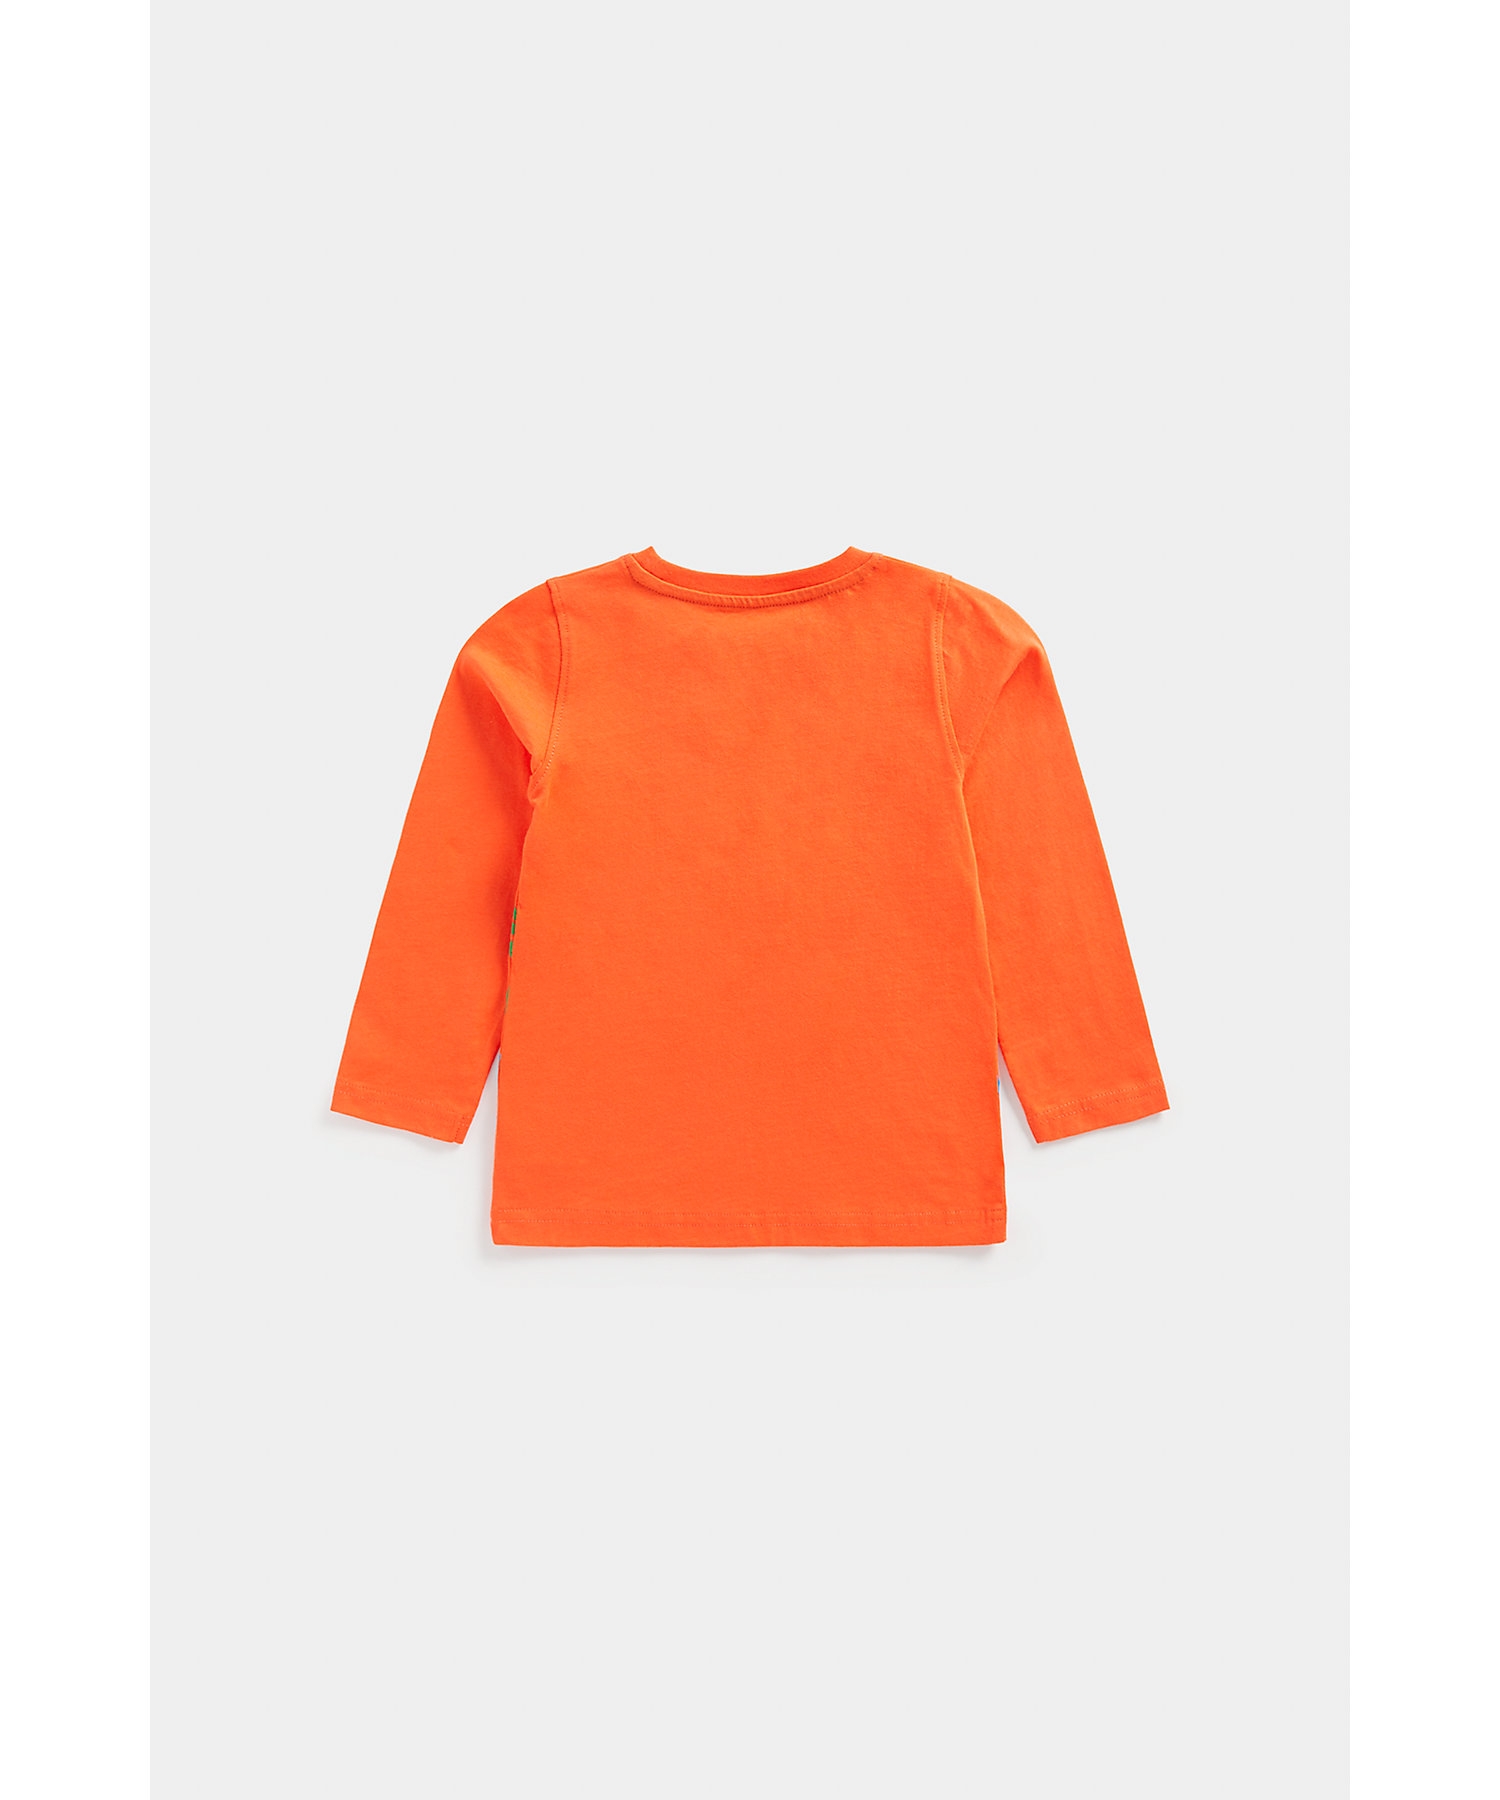 Boys Full Sleeves T-Shirt -Orange